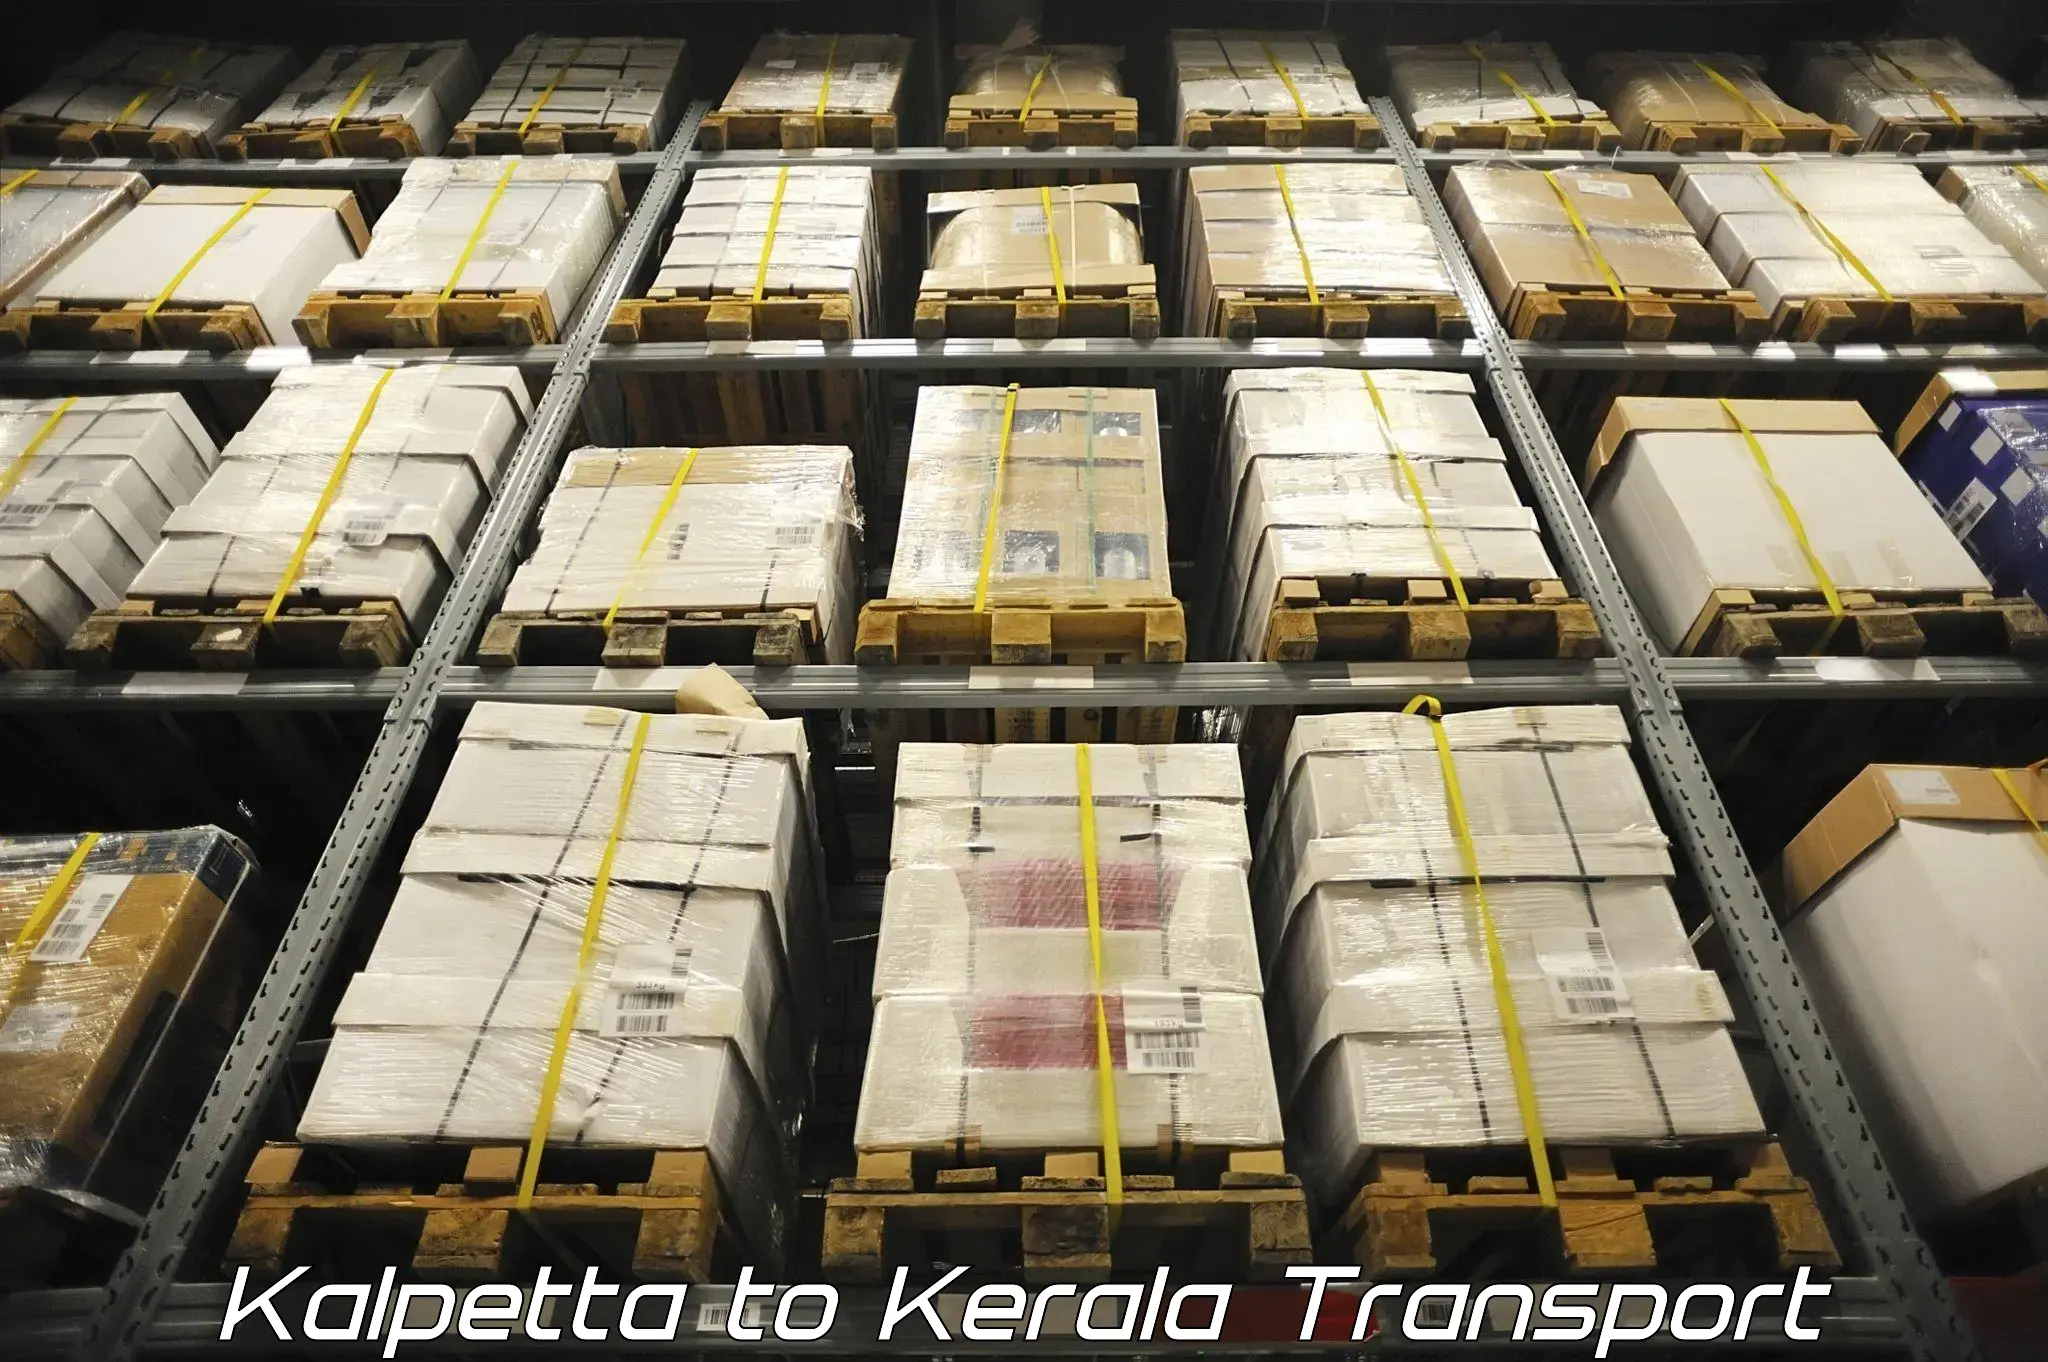 Intercity transport Kalpetta to Chervathur